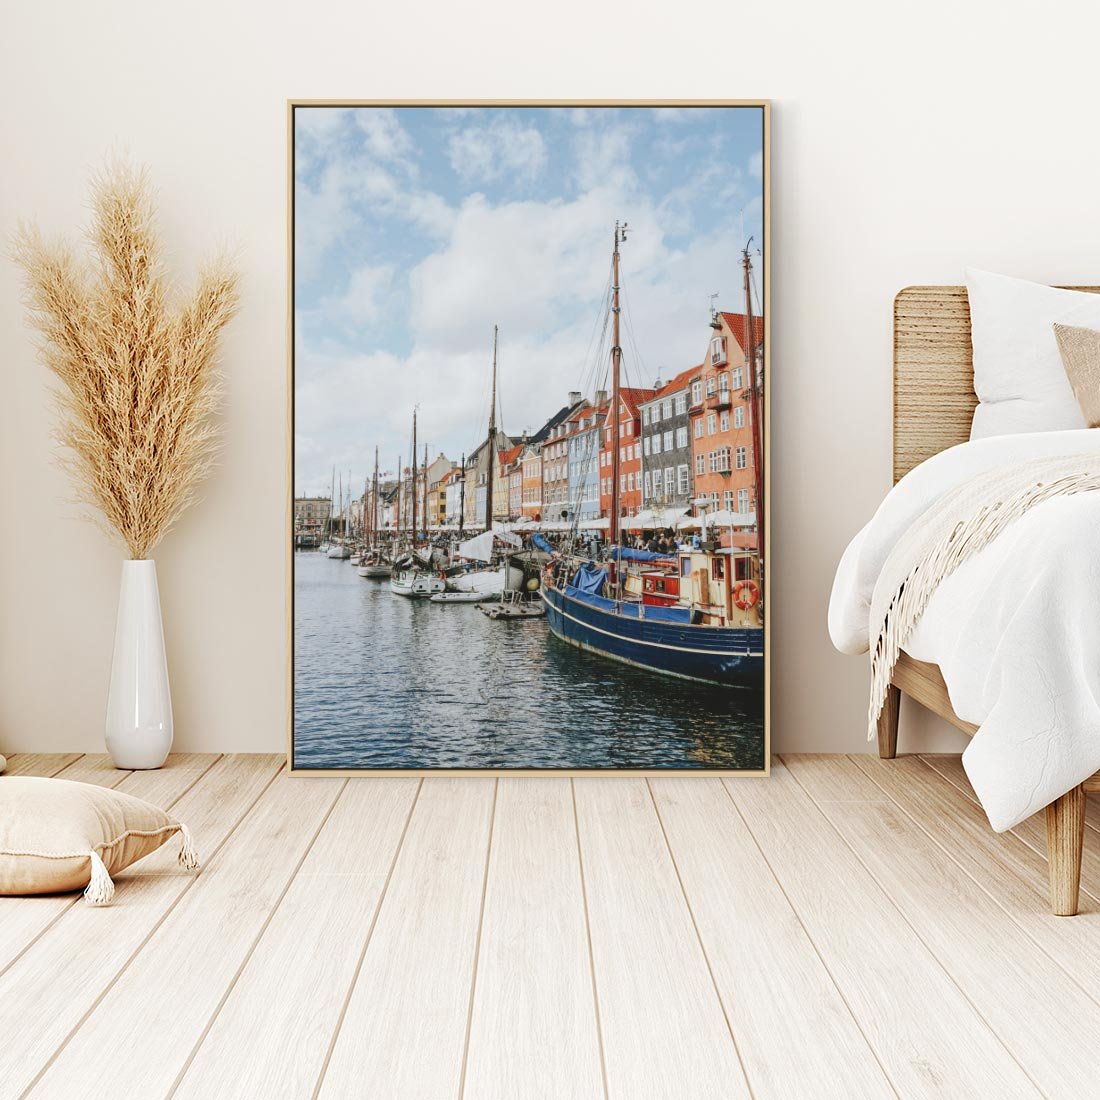 Obraz w ramie 50x70 - Wibracje Miejskiego Klimatu - Dania, Kopehaga - rama drewno